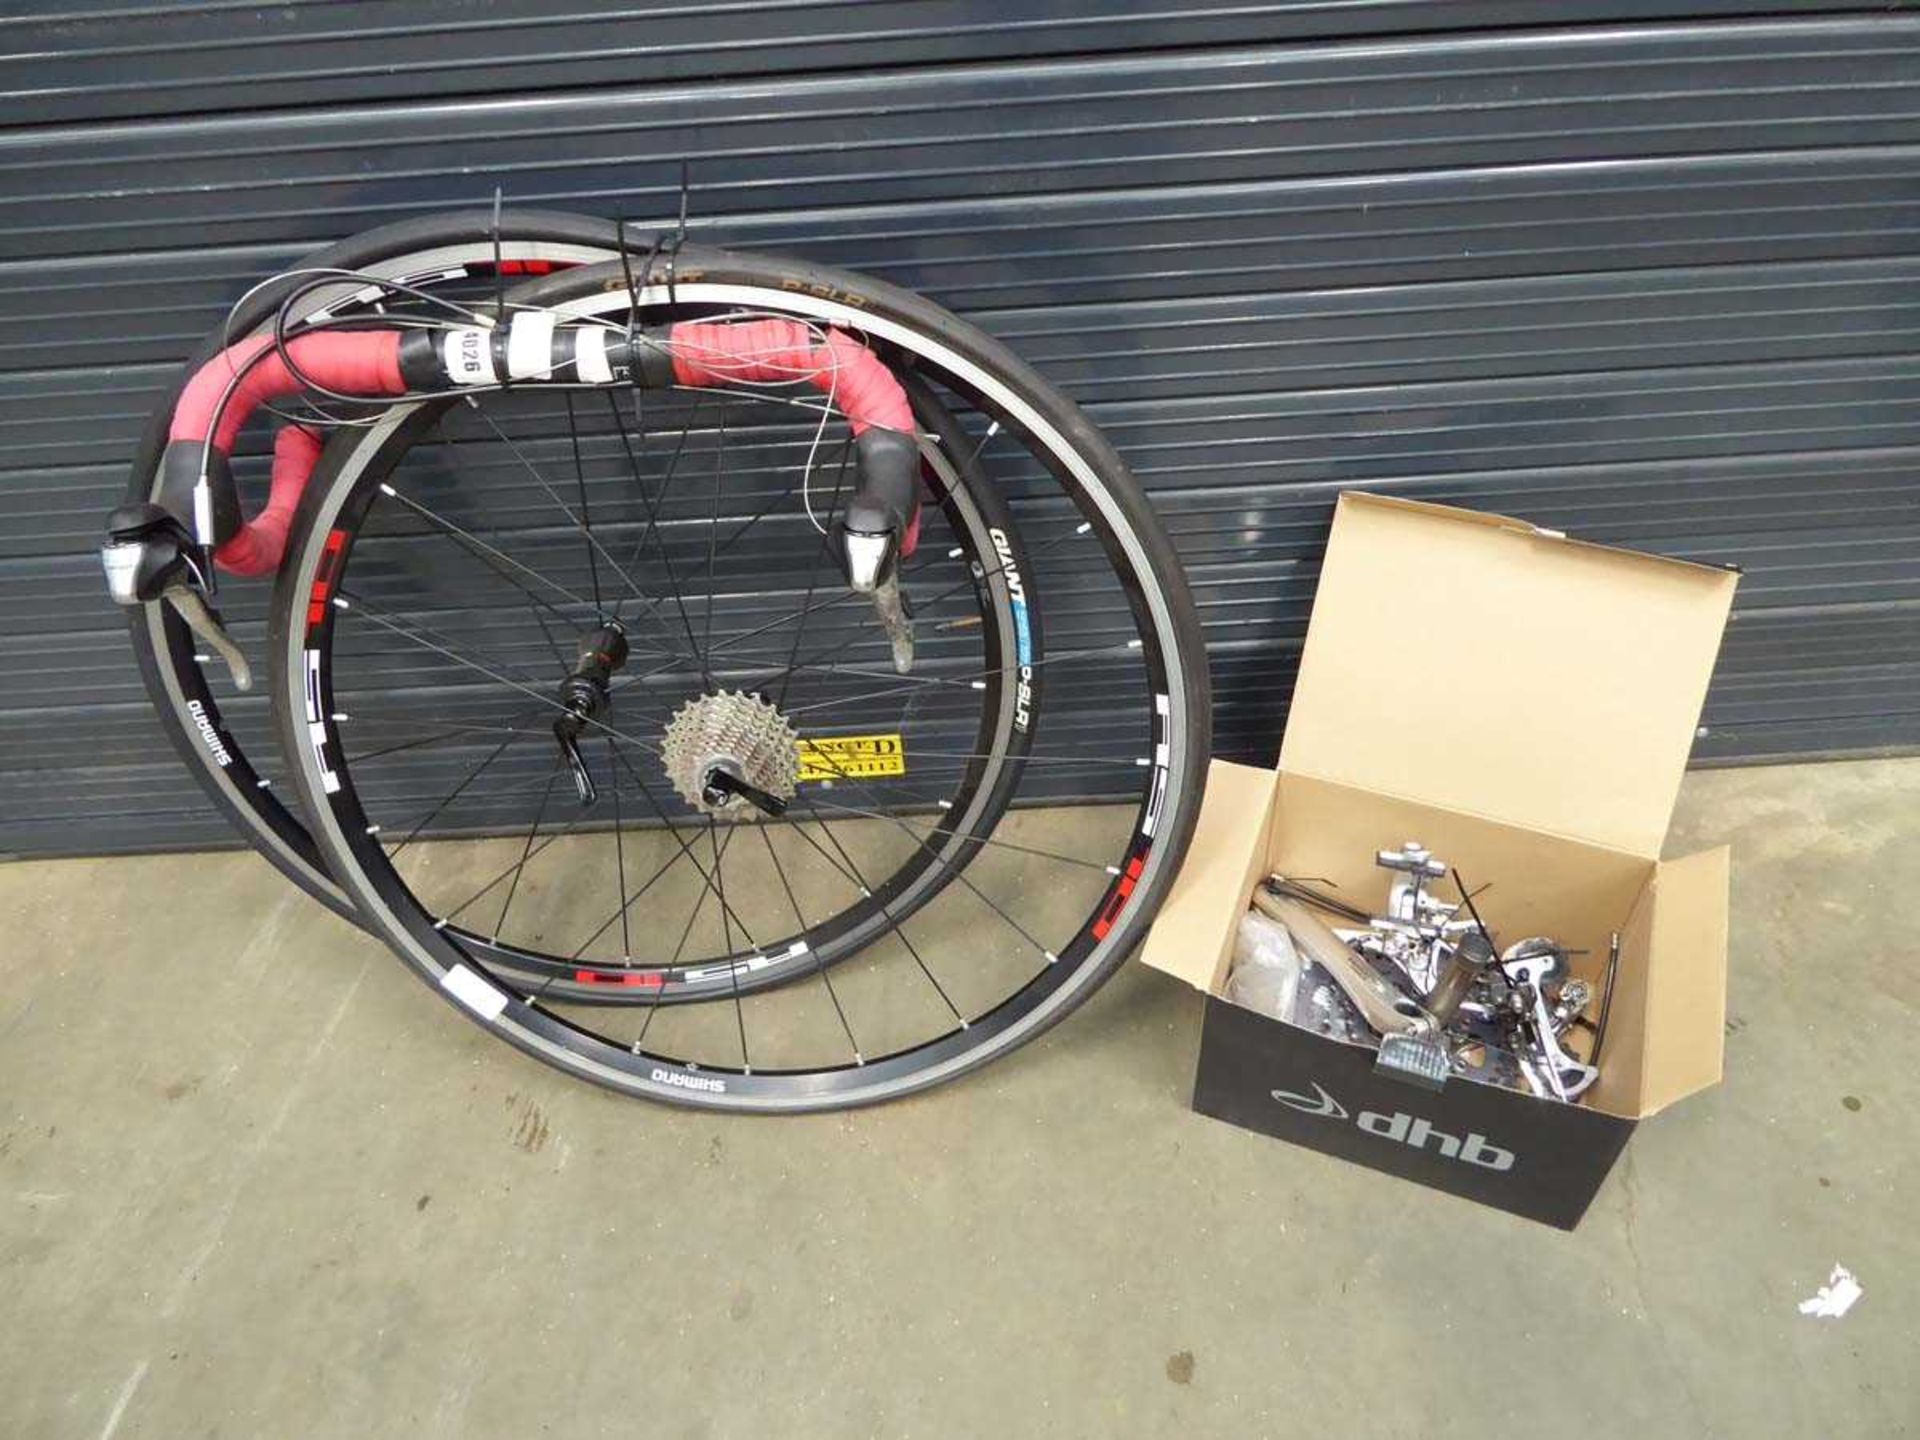 2 racing bike wheels, set of handlebars, and box containing various parts